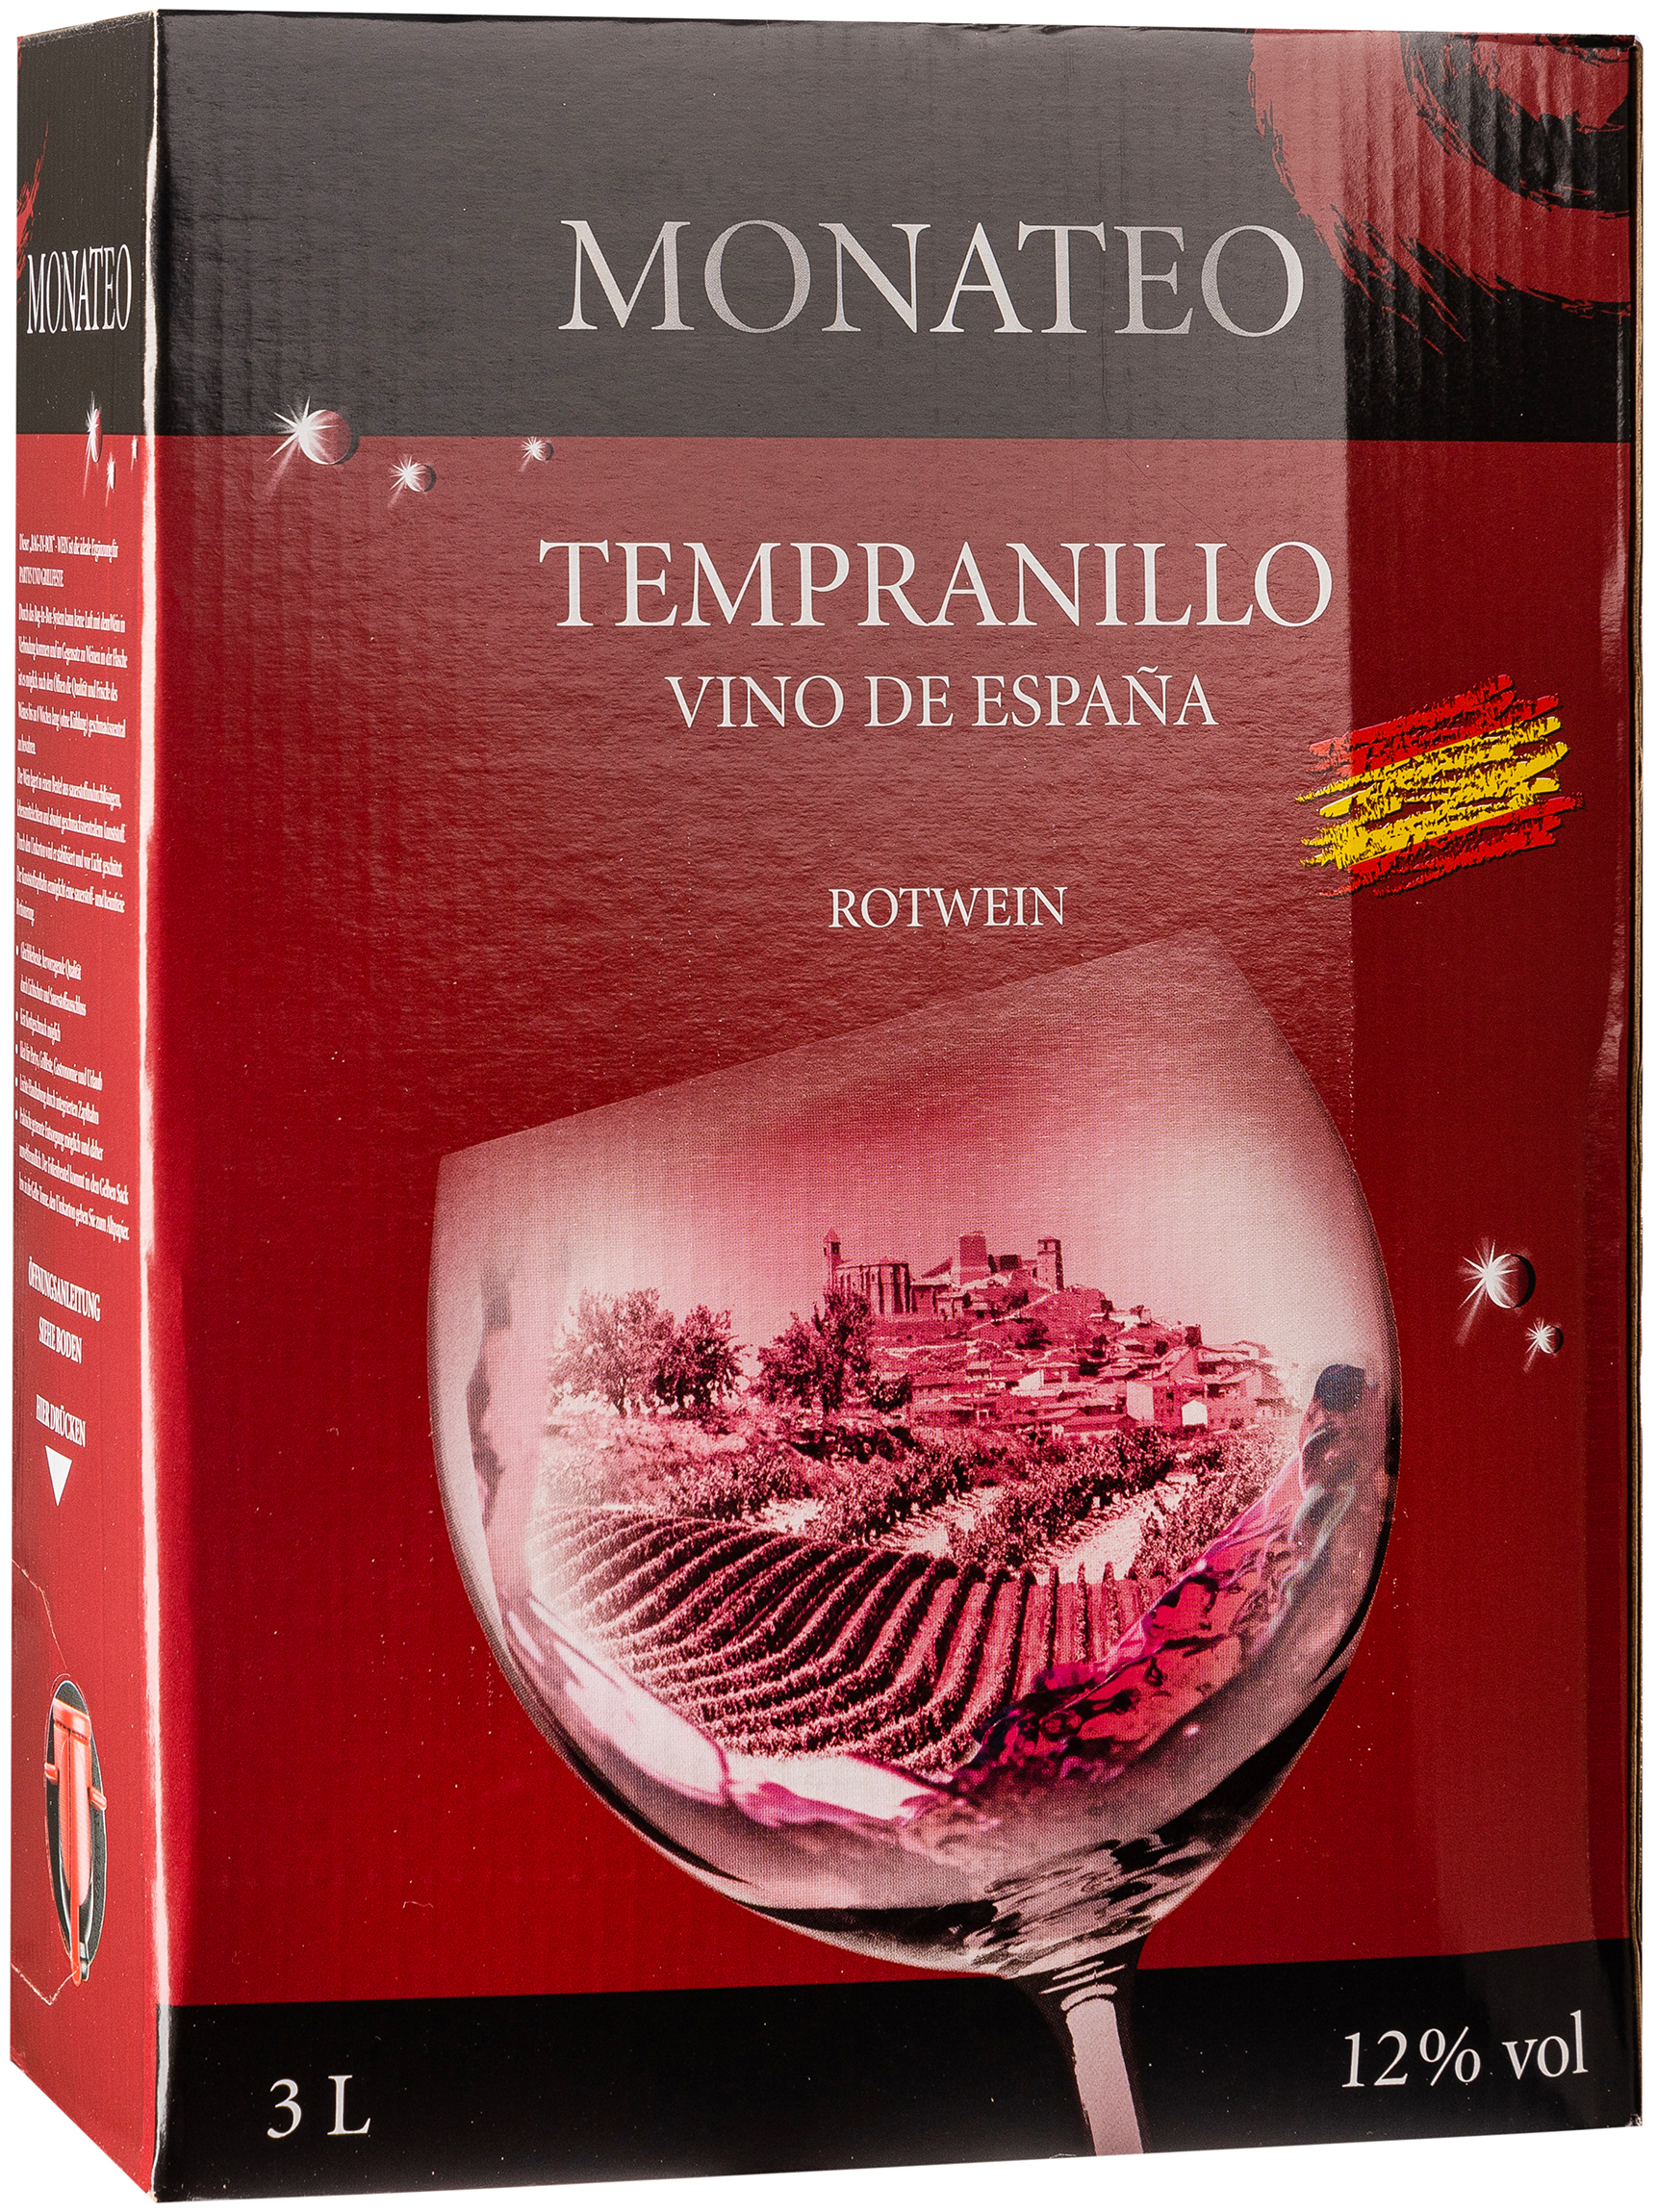 Spain Monateo Tempranillo 3L